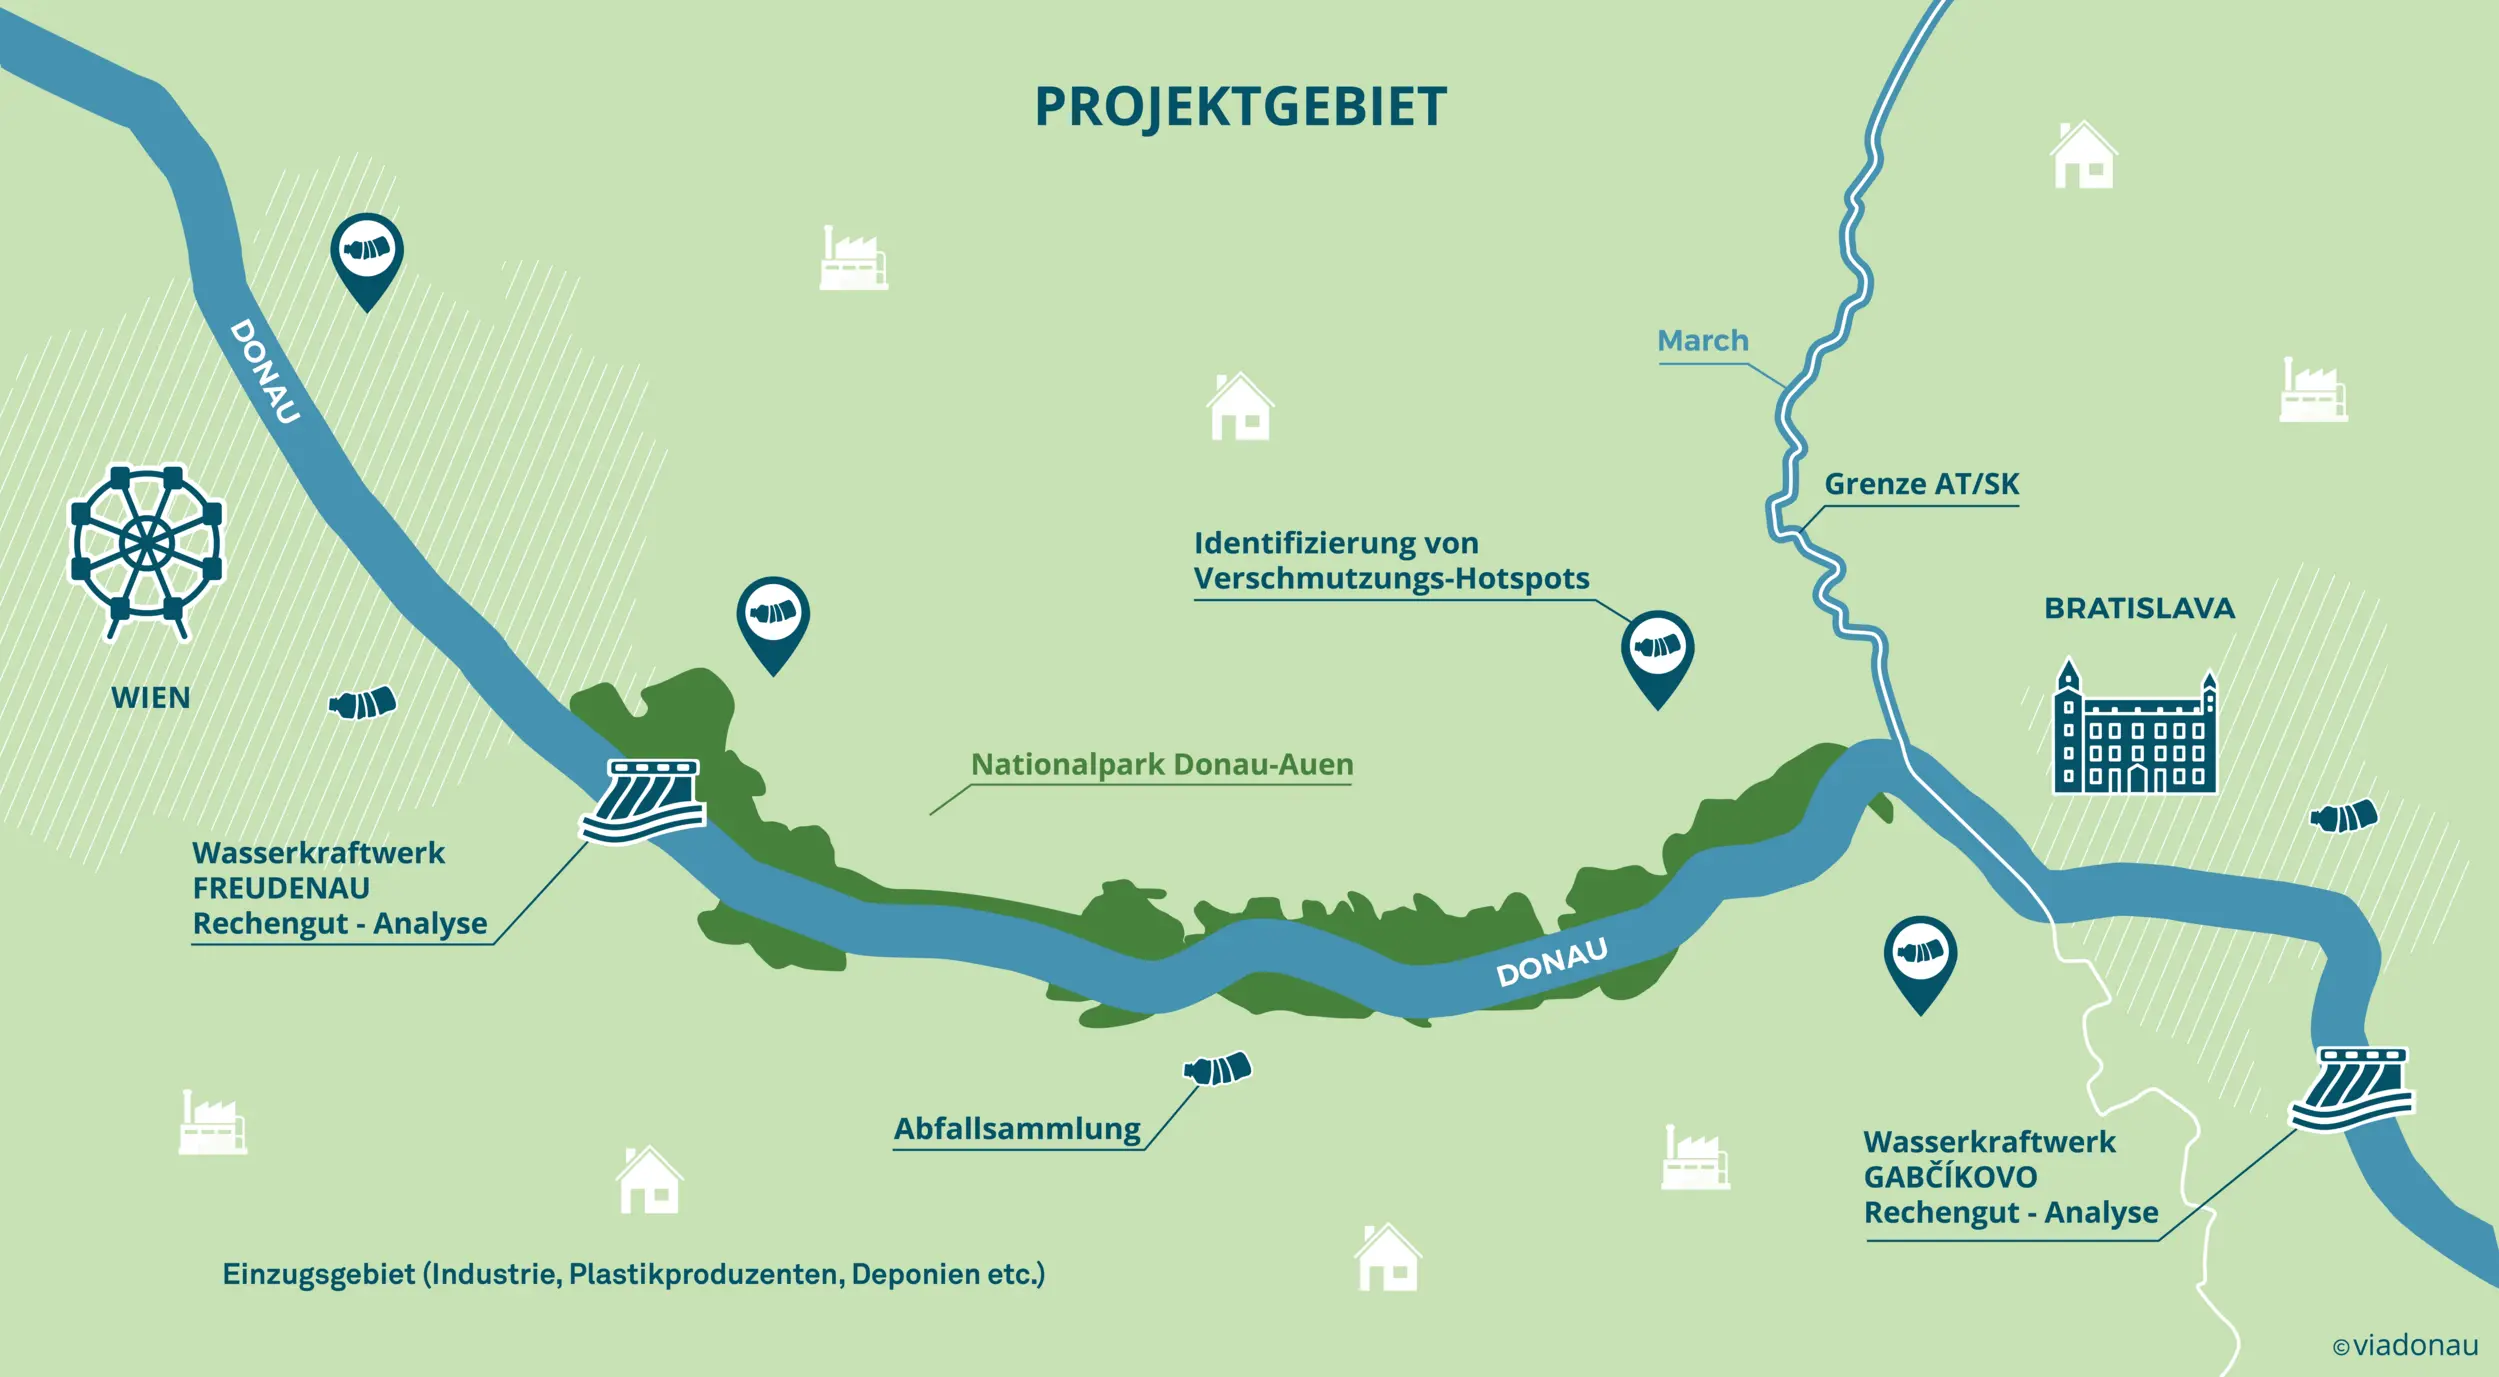 Projektgebiet PlasticFreeDanube zwischen Wien und Gabickovo